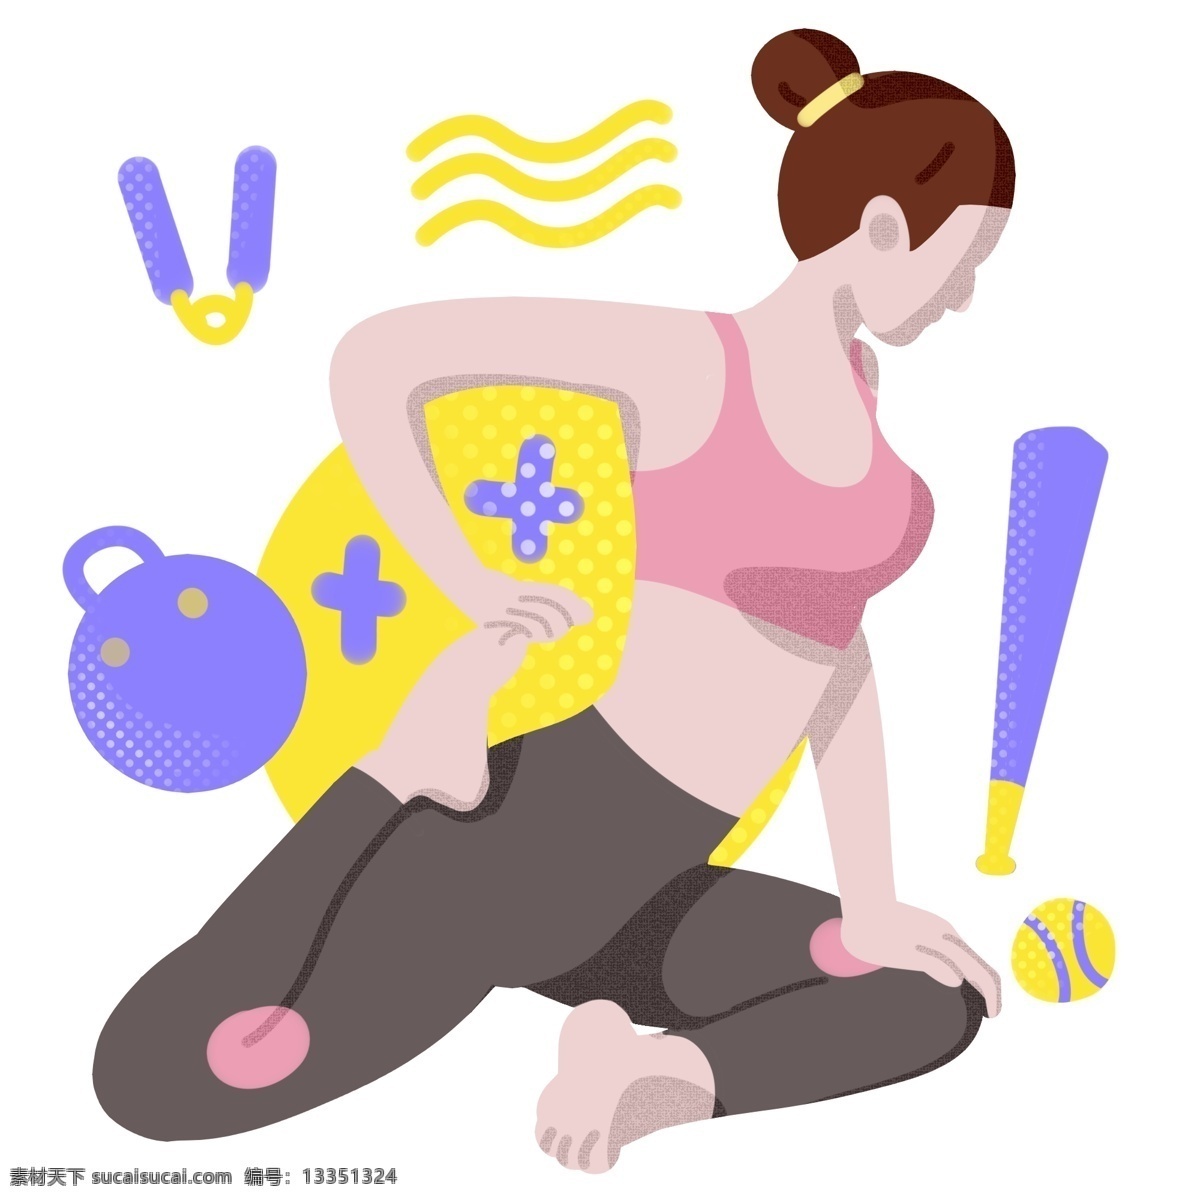 瑜伽 运动 女孩 插画 练瑜伽的女孩 蓝色棒球棒 黄色棒球 健身器材 锻炼身体 健身的女孩